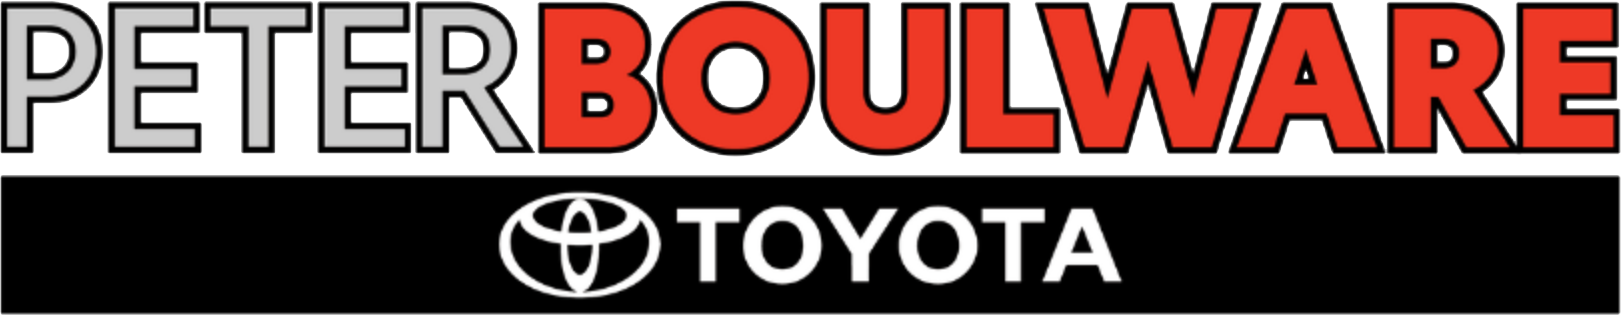 Peter Boulware Toyota Logoc